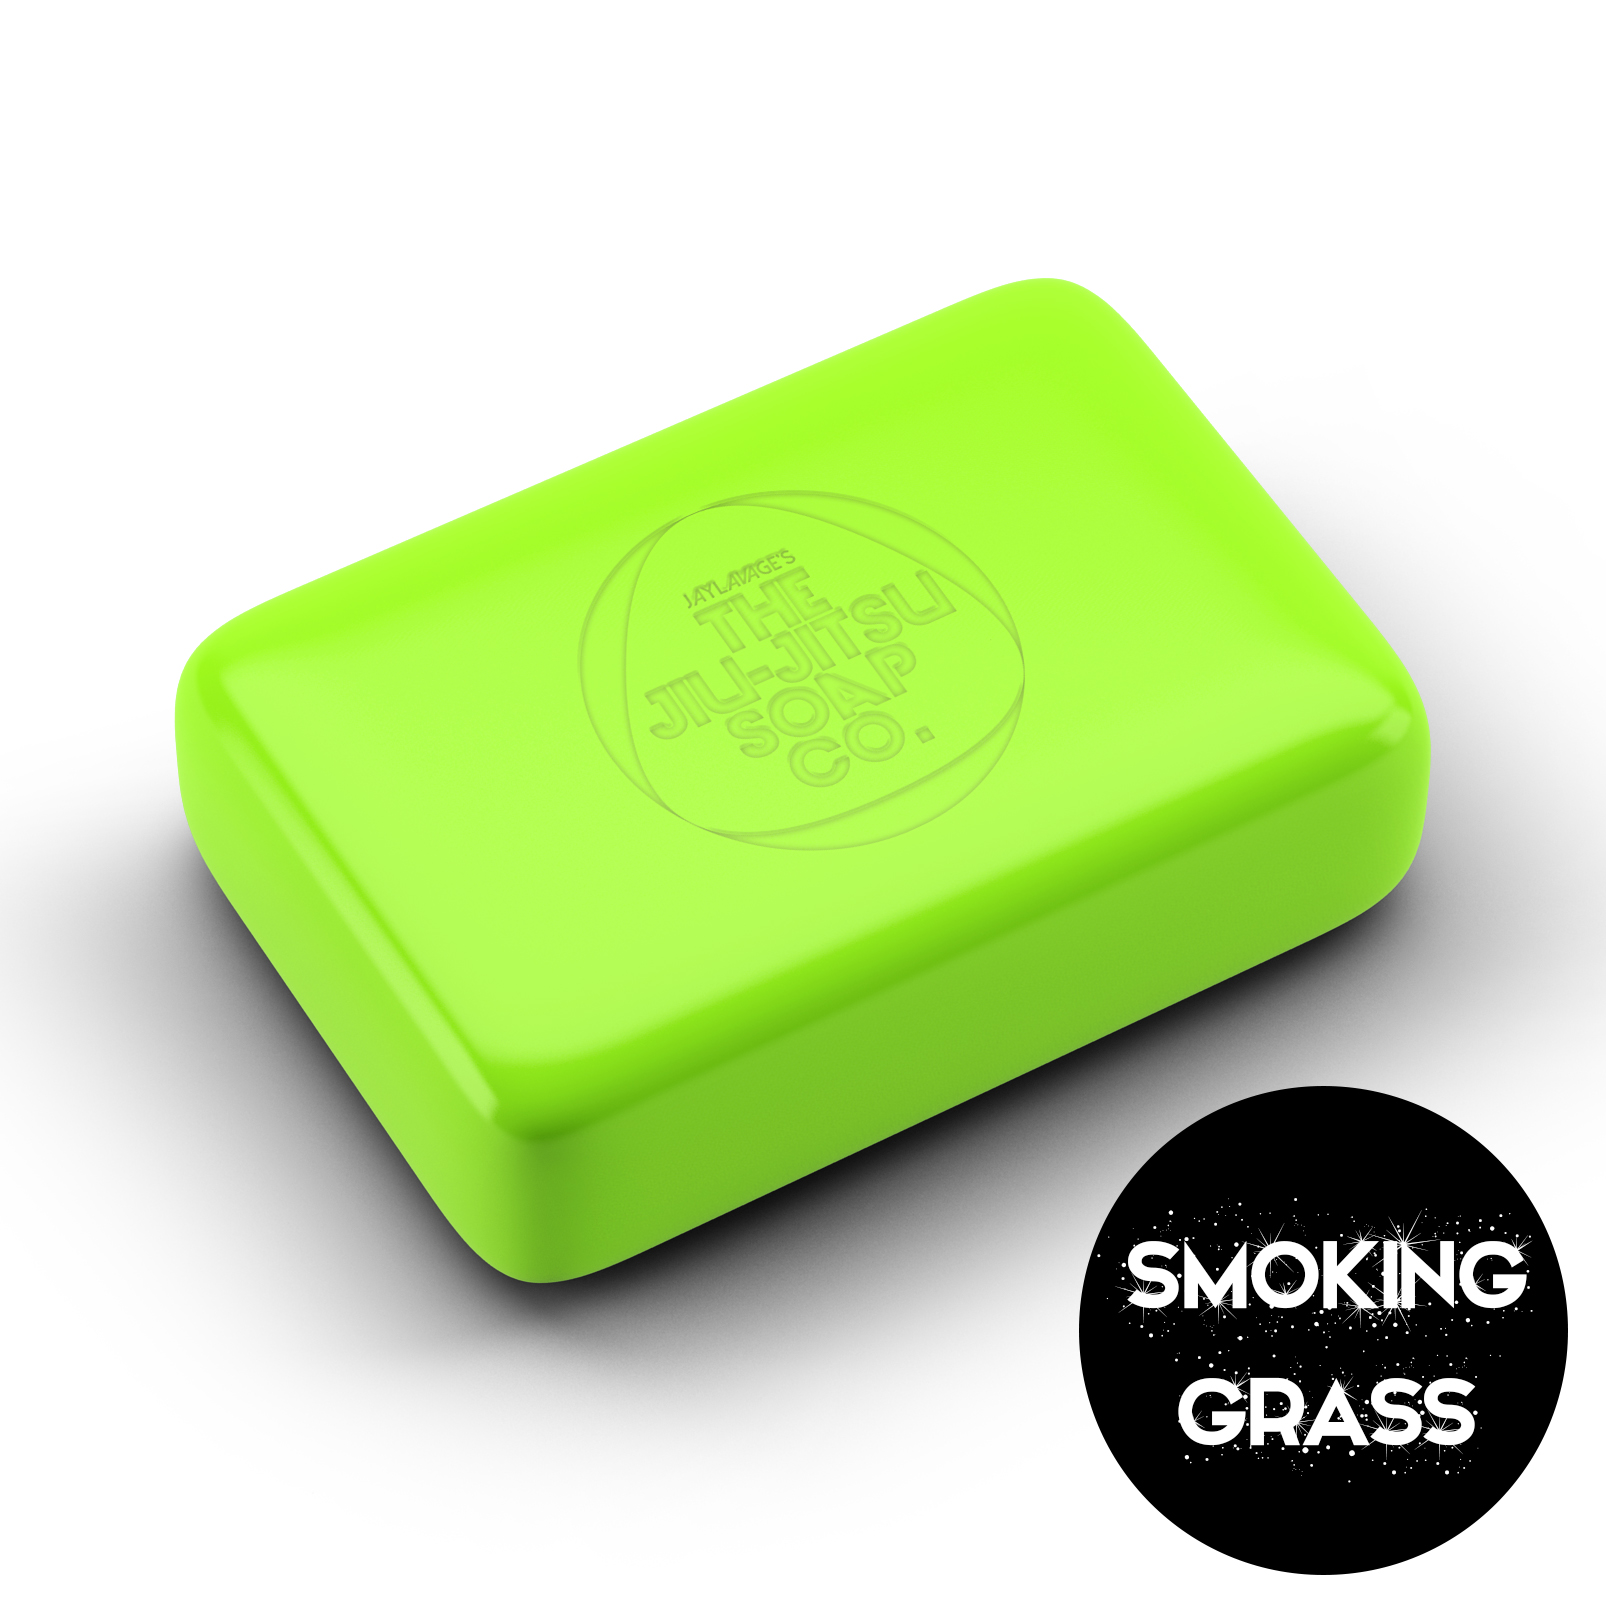 smokinggrassnew.jpg